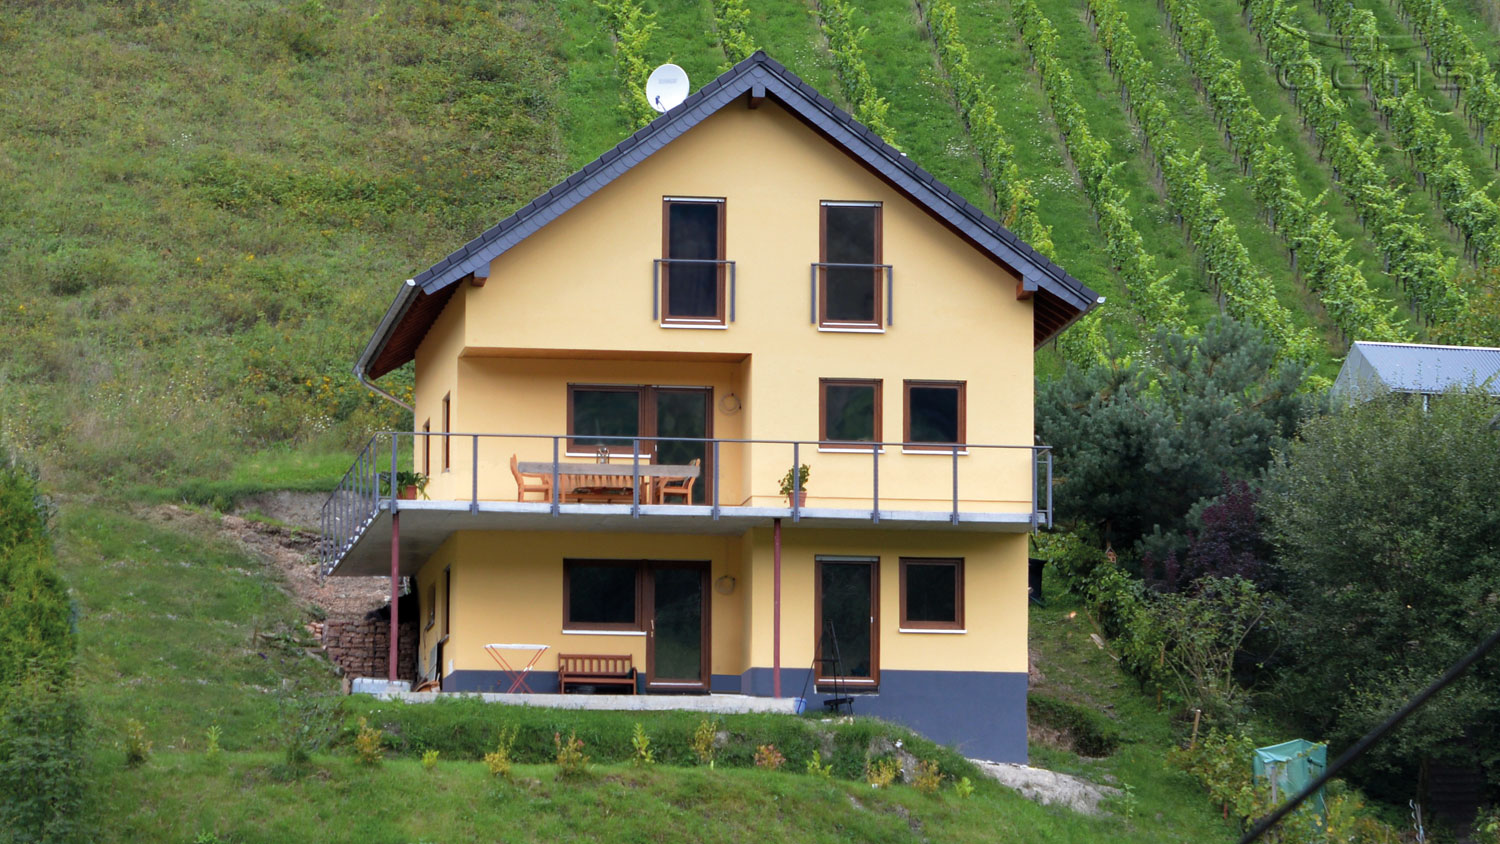 Wohnhaus in Holzbauweise in Oberheimbach - Klassische Architektur